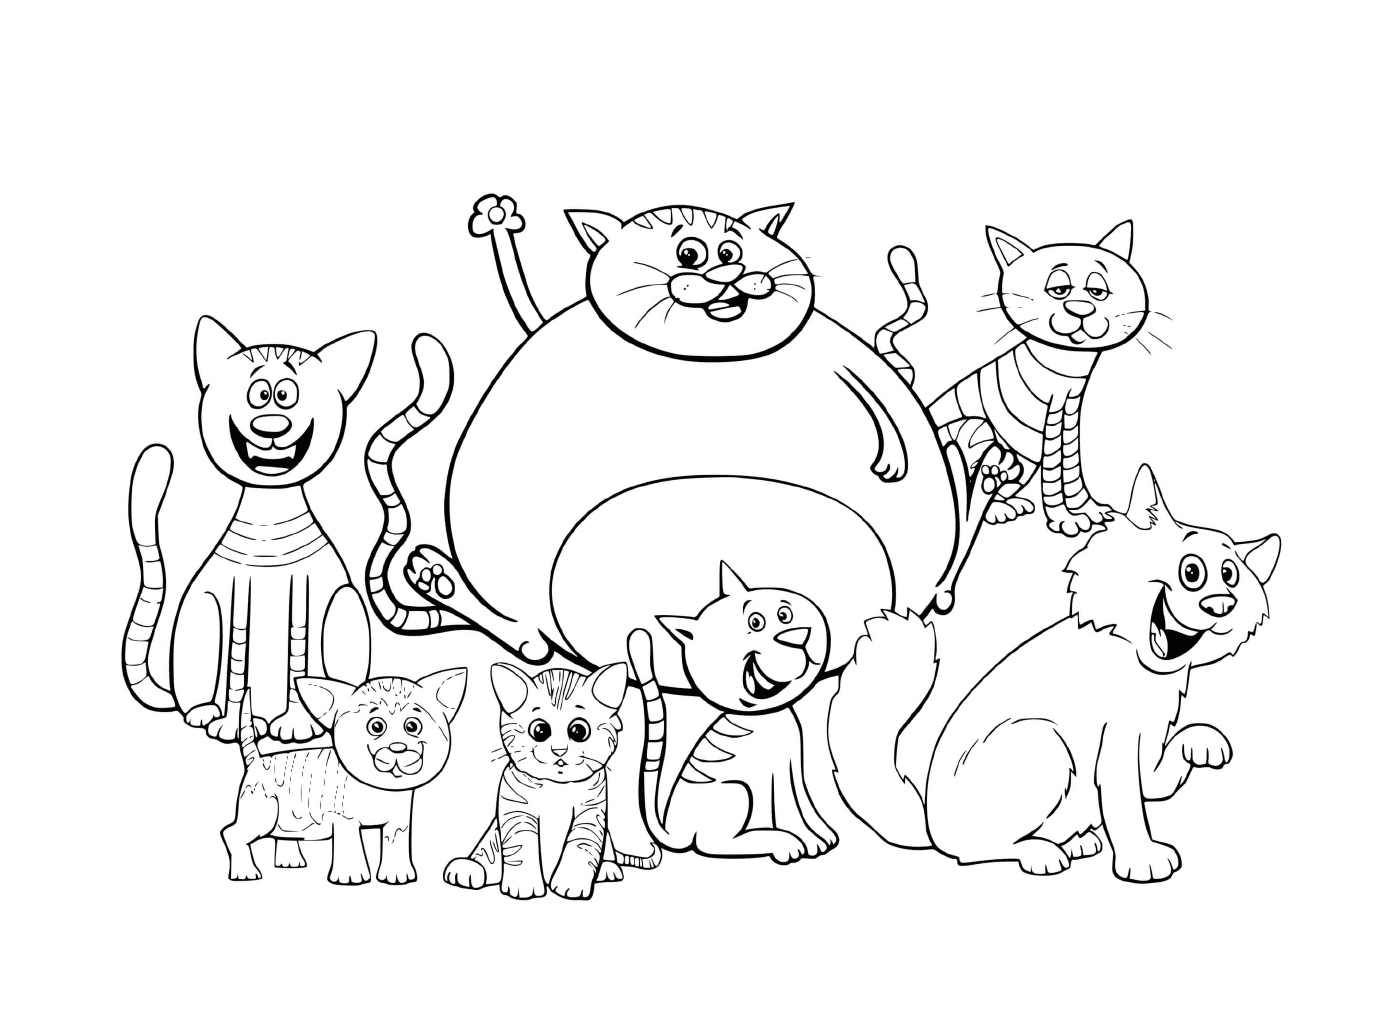  Gatos e gatinhos de diferentes tamanhos combinados 